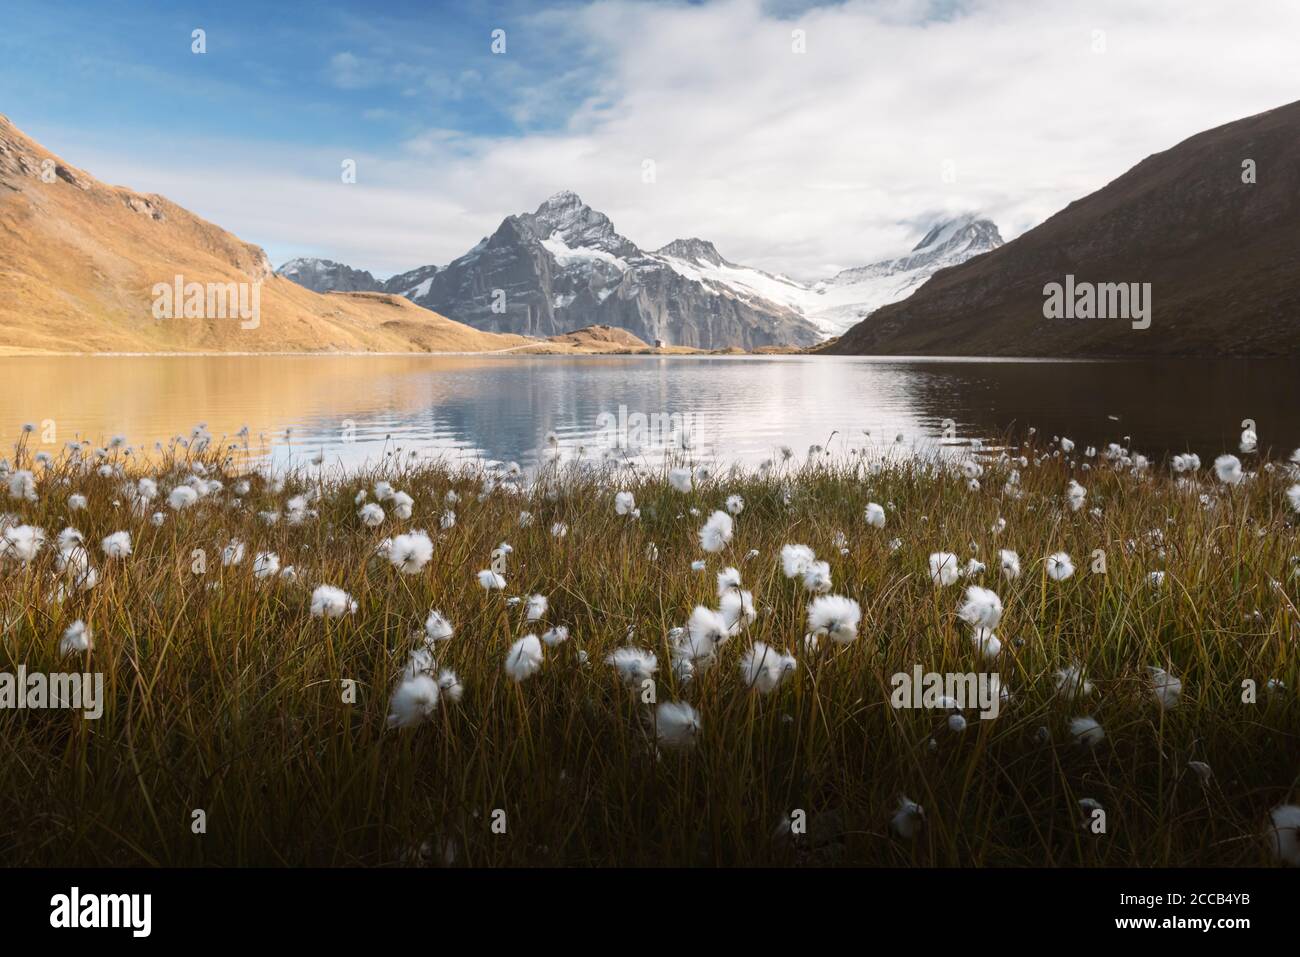 Vue pittoresque sur les Alpes Suisses dans le lac de Bachalp montagnes. Floraison de fleurs blanches sur un premier plan. La vallée de Grindelwald, Suisse. Photographie de paysage Banque D'Images